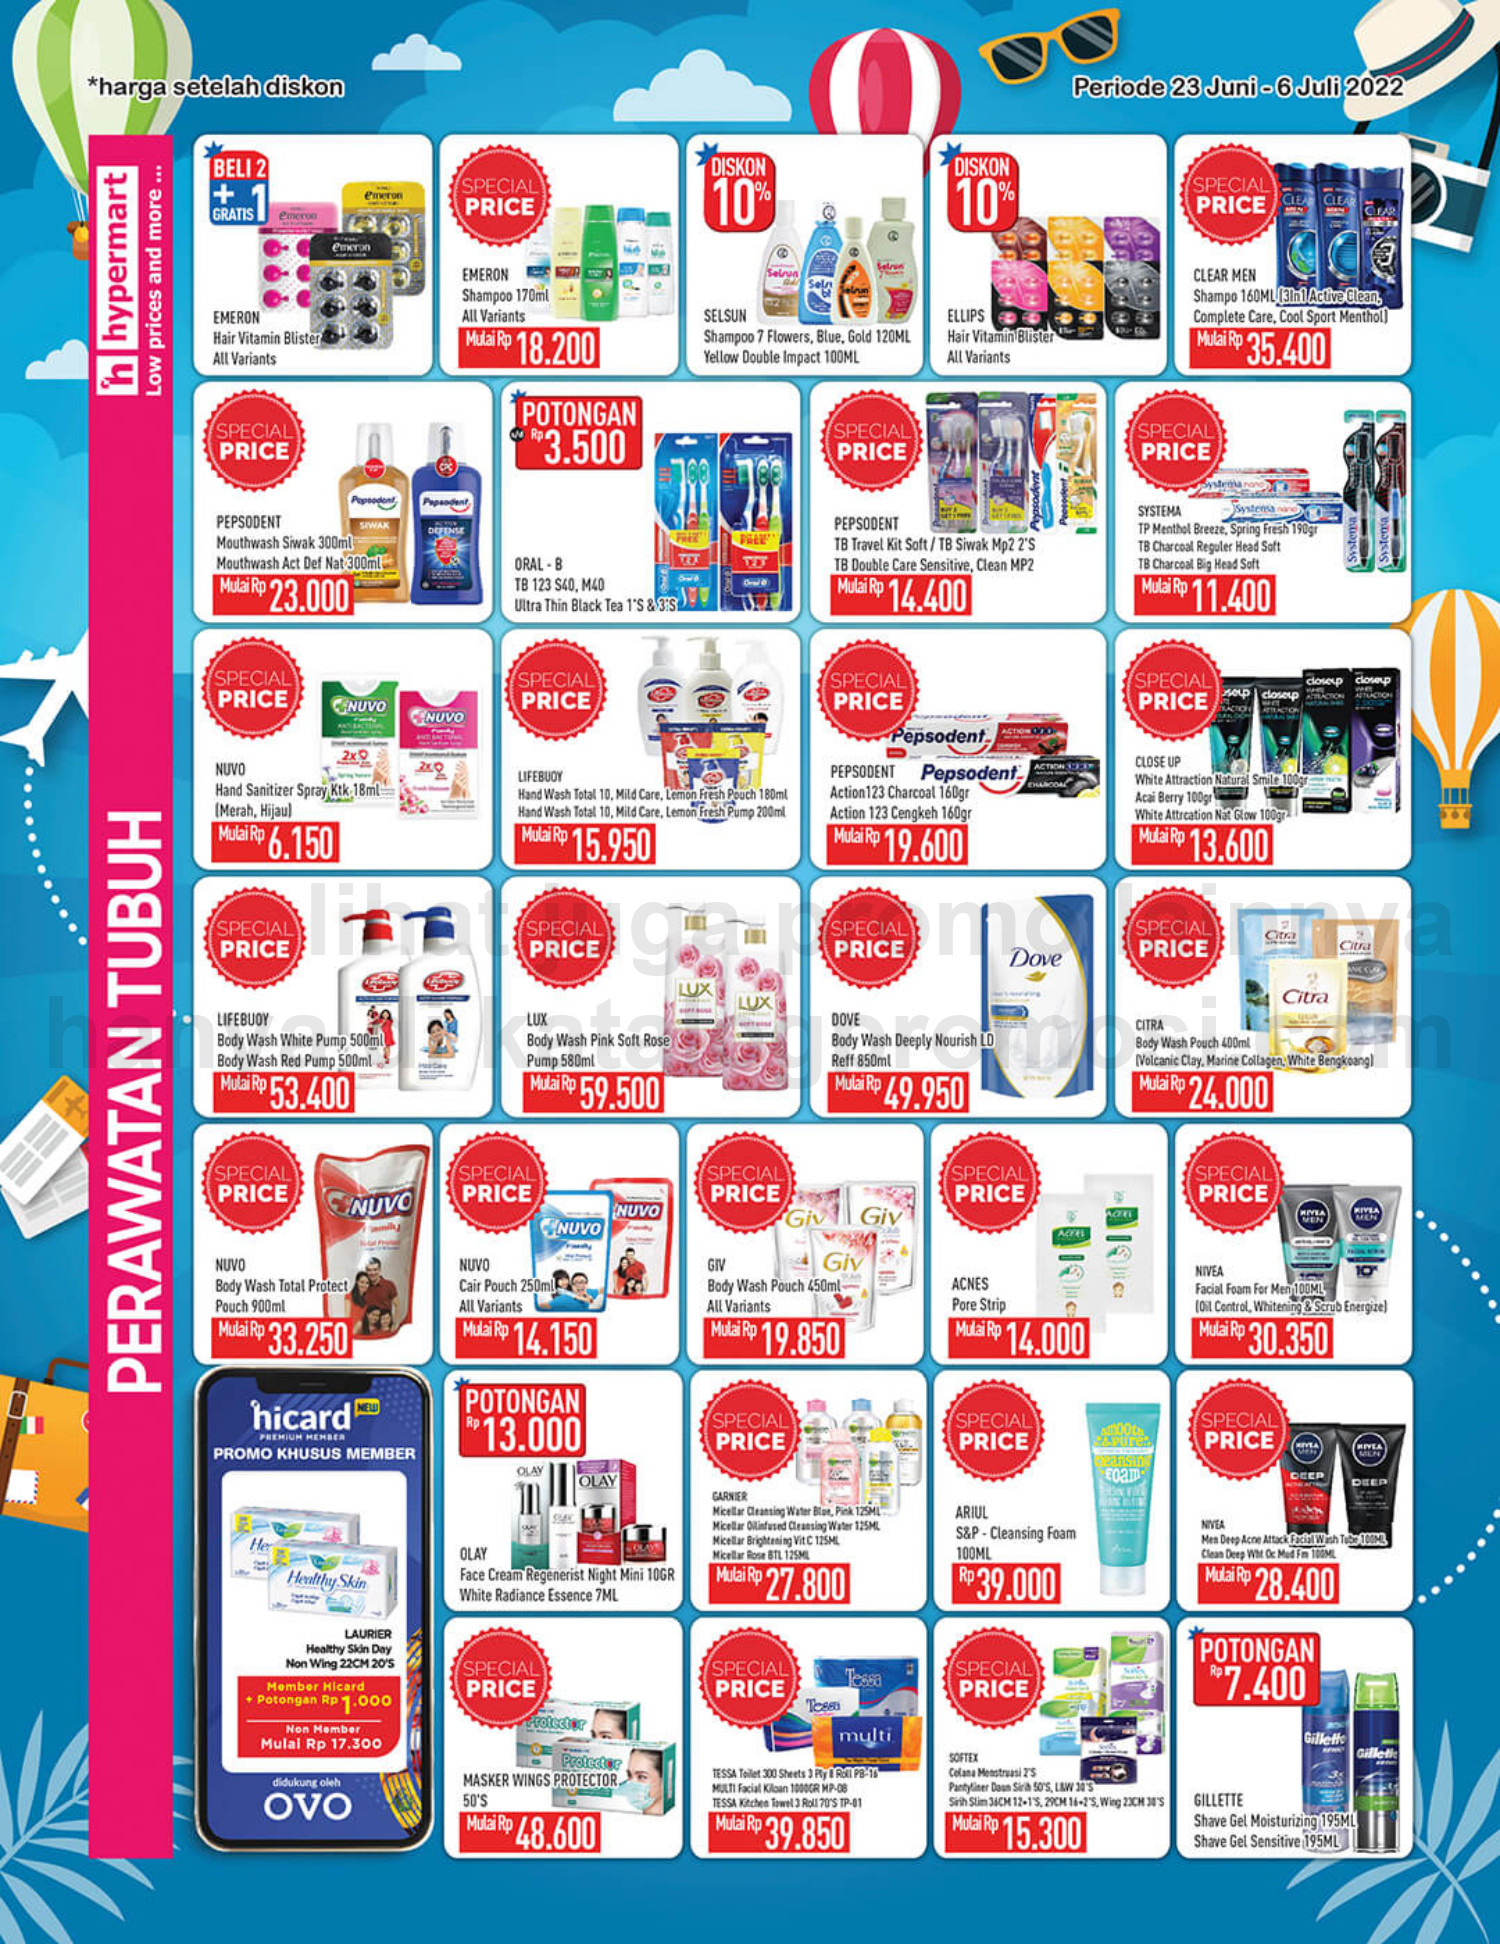 Promo Hypermart Katalog Belanja Mingguan periode 23 Juni - 06 Juli 2022